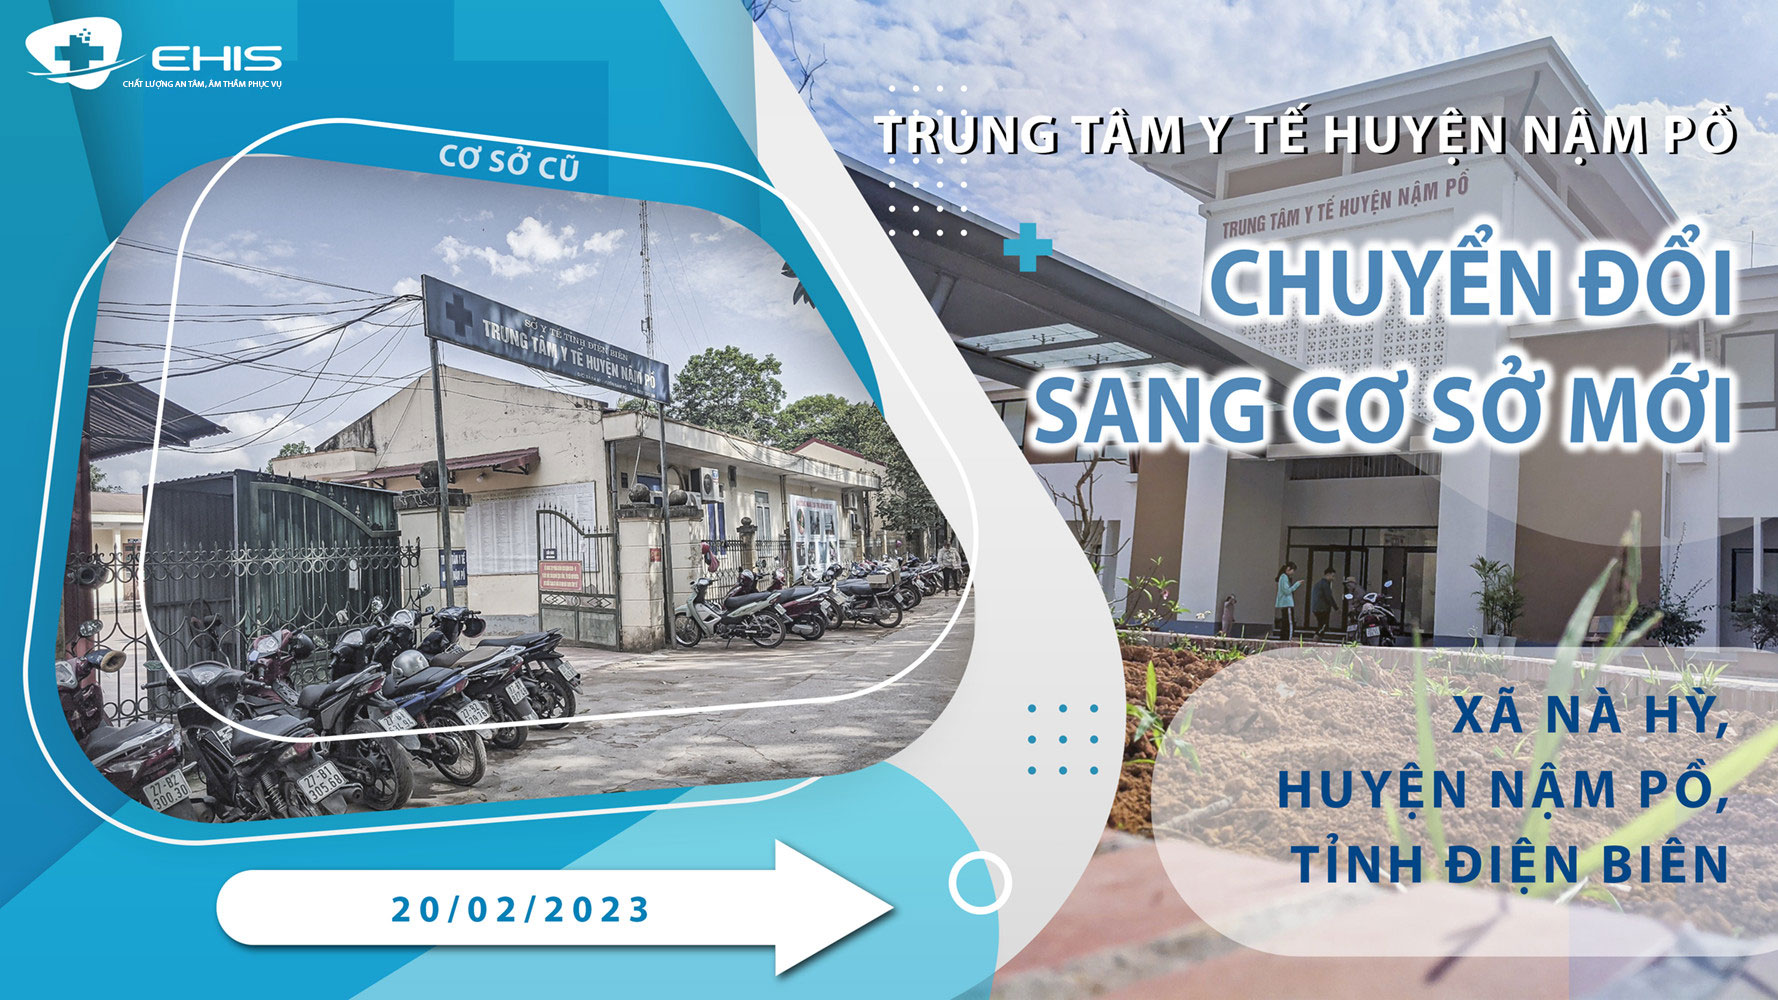 Trung tâm y tế huyện Nậm Pồ chuyển đổi sang cơ sở mới từ ngày 20/02/2023